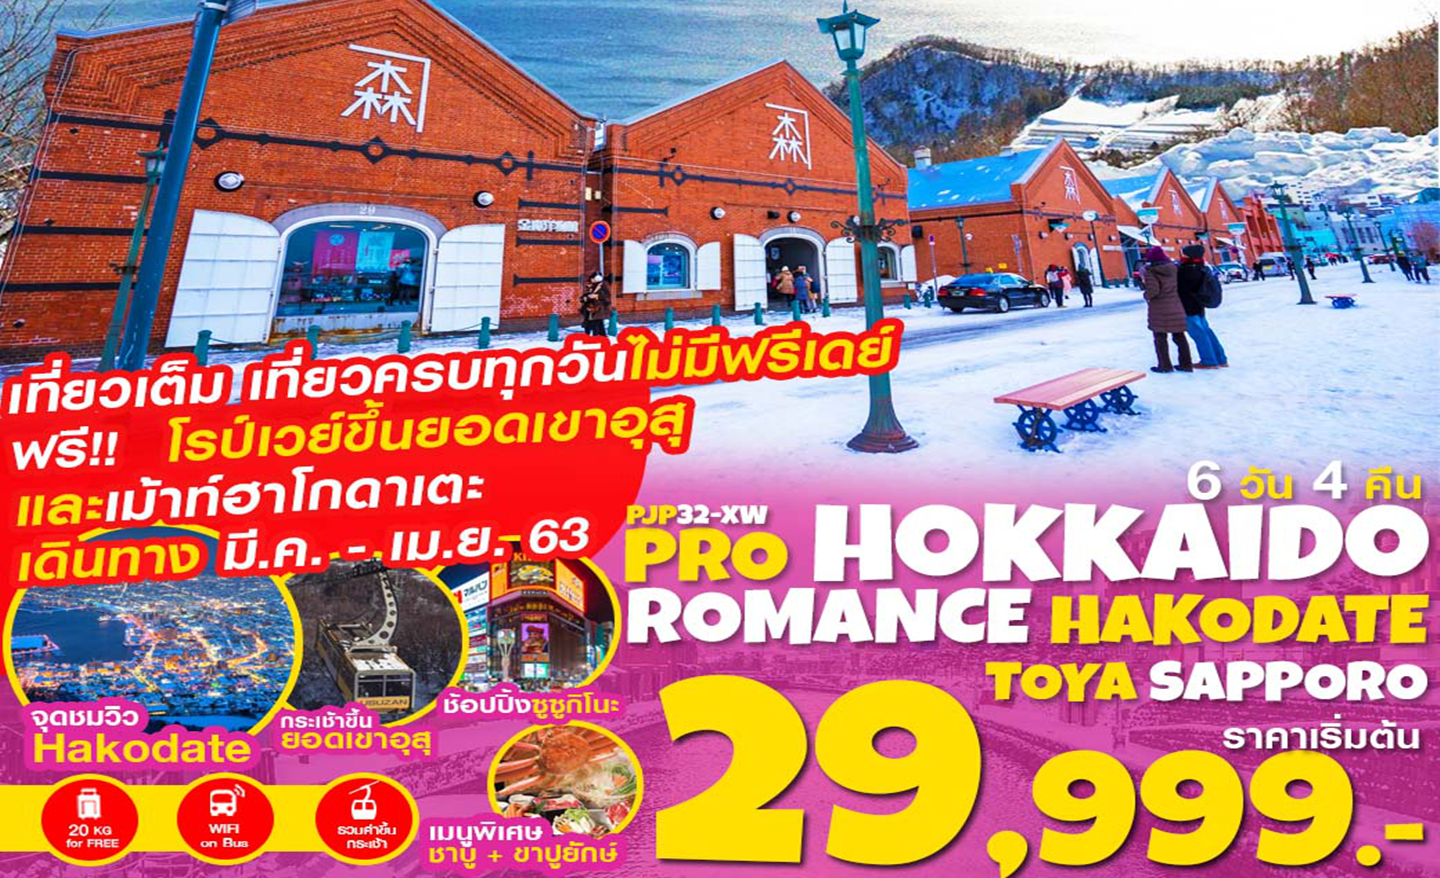 ทัวร์ญี่ปุ่น Pro Hokkaido Romance Hakodate Toya Sapporo เที่ยวเต็ม ไม่มีฟรีเดย์ 6D4N (มี.ค.-เม.ย.63)